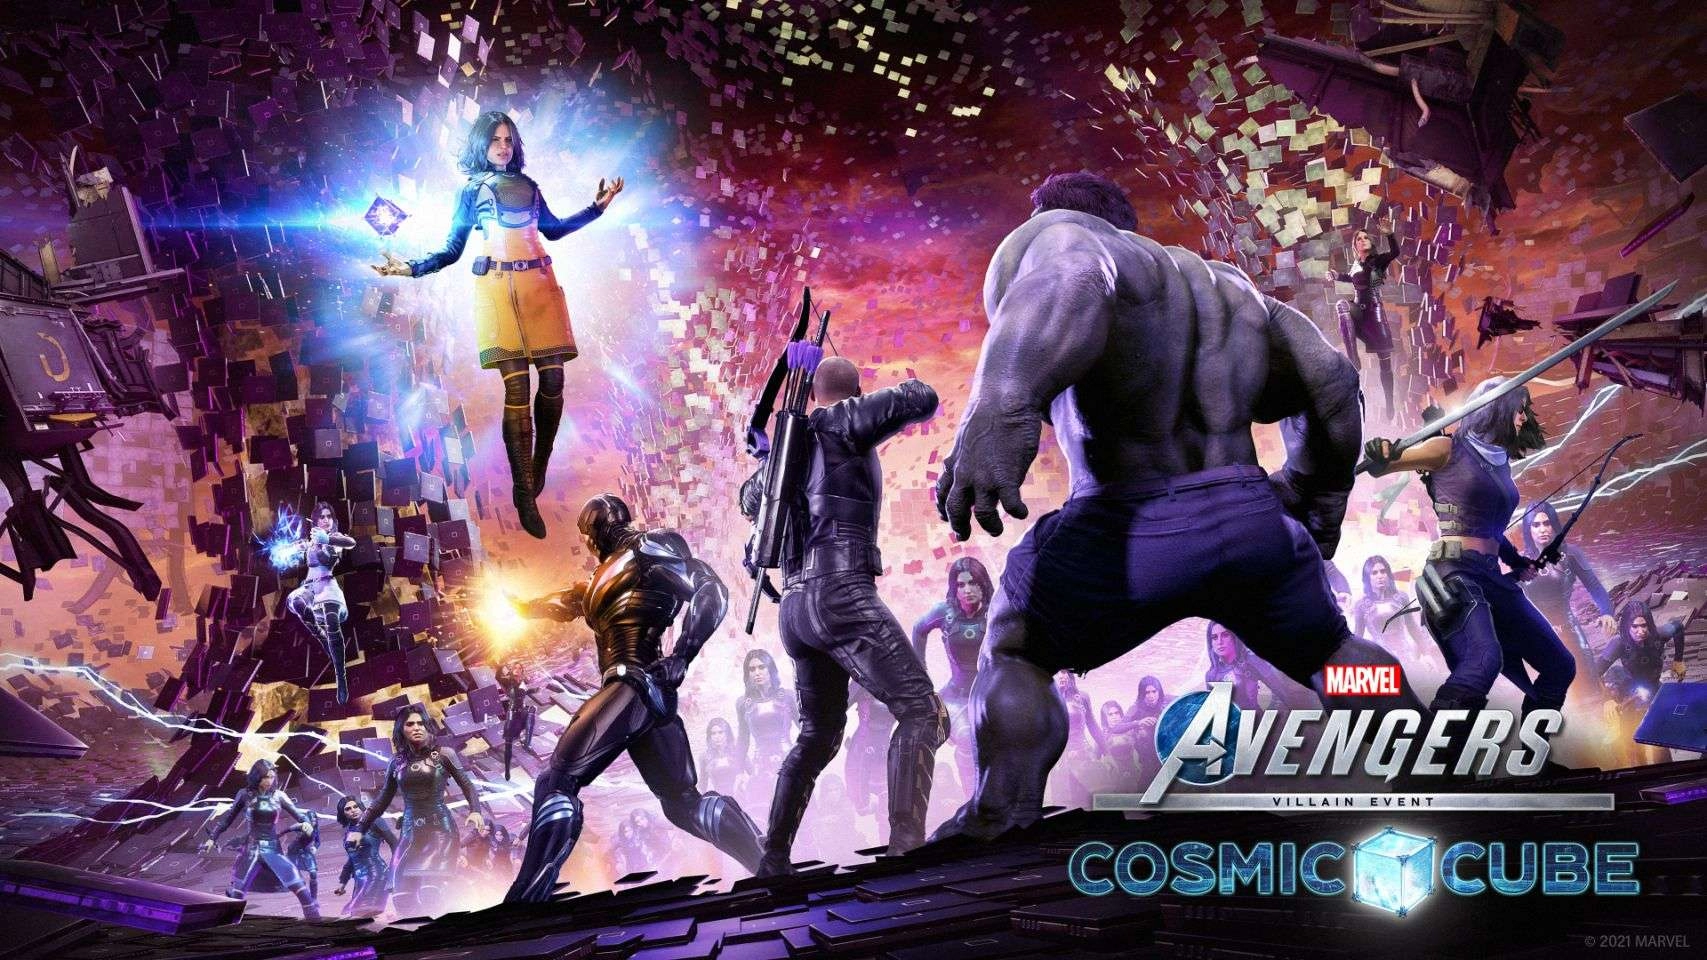 Marvel’s Avengers The Cosmic Cube